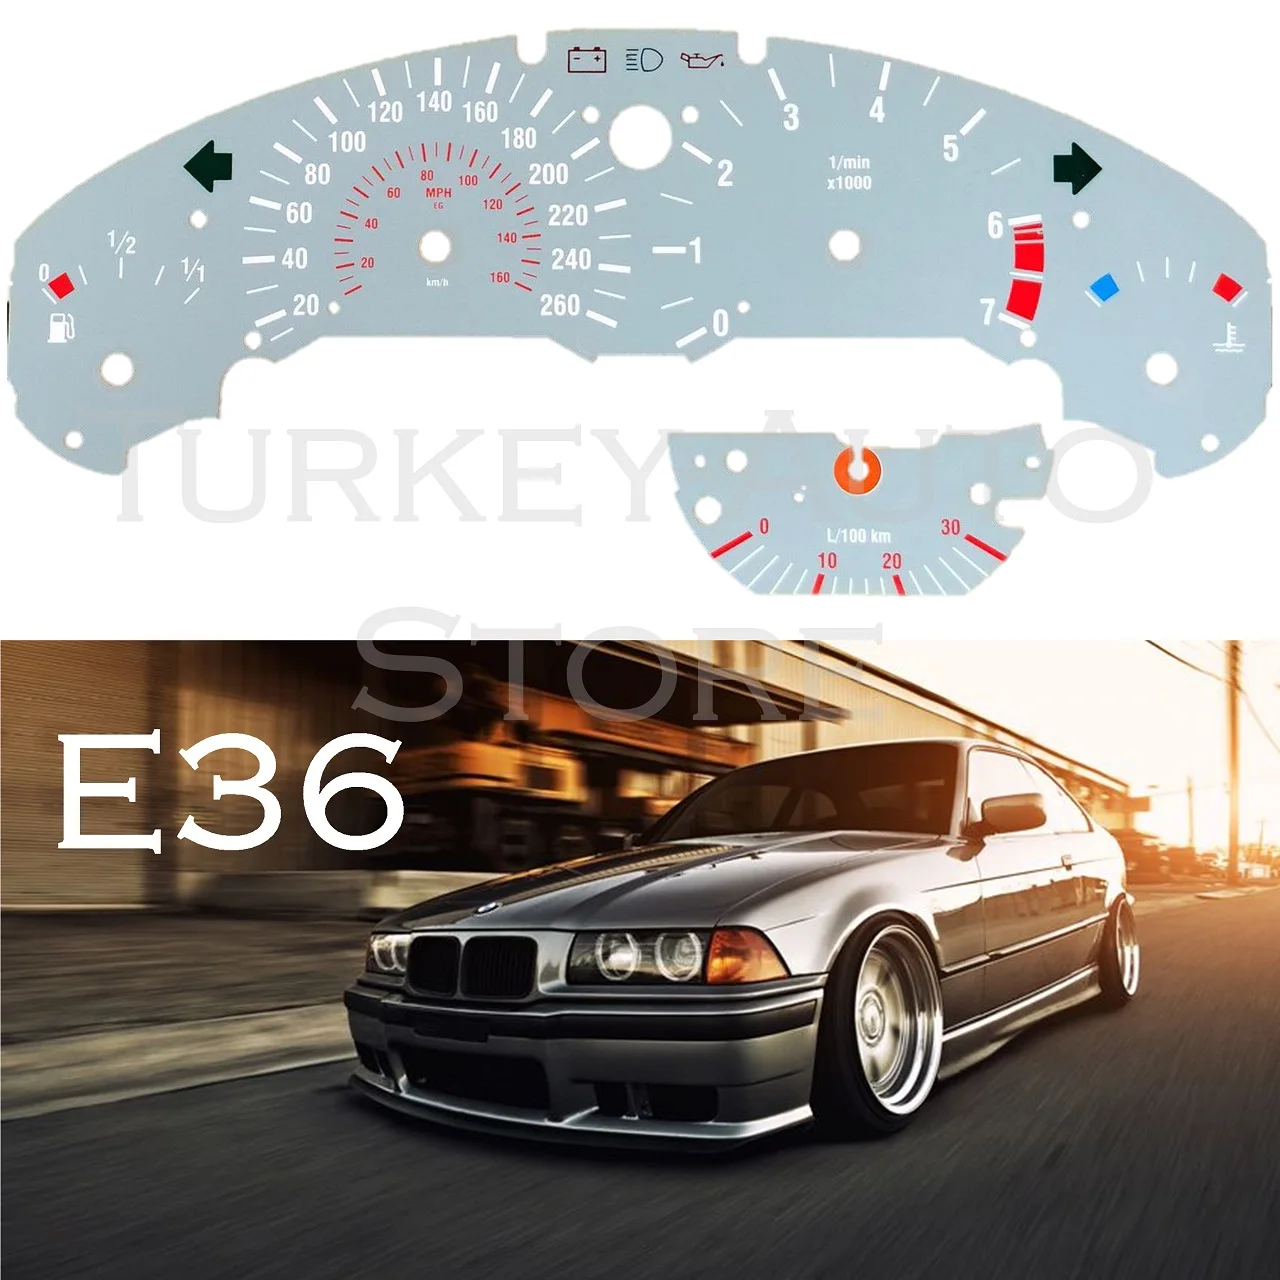 De bord Indicator de Bord pentru BMW E36 Accesorii Auto Vitezometru 260 240 220 KM / h KMH Reînnoire Performance Tuning Sport M technic Grey